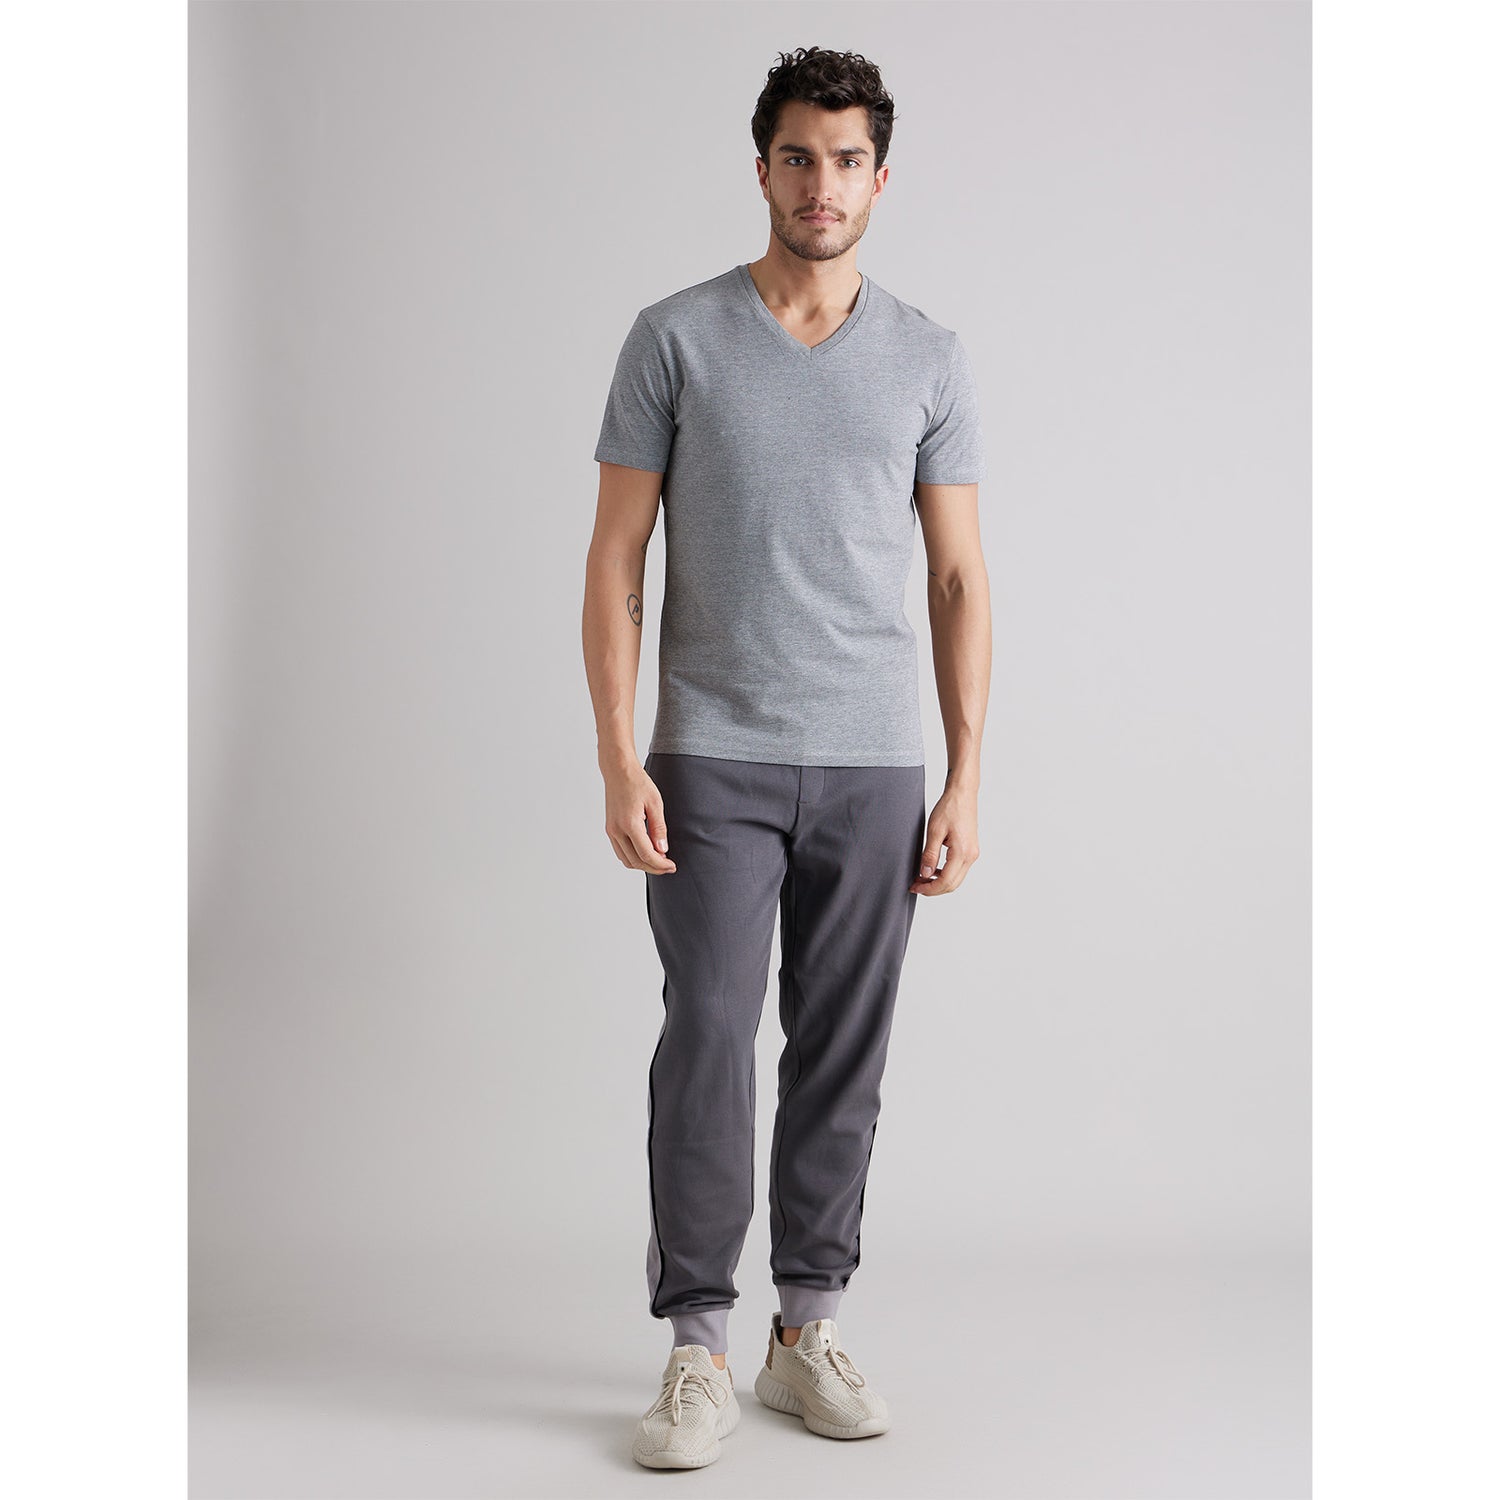 Grey V-Neck Short Sleeves Cotton T-shirt (NEUNIV)